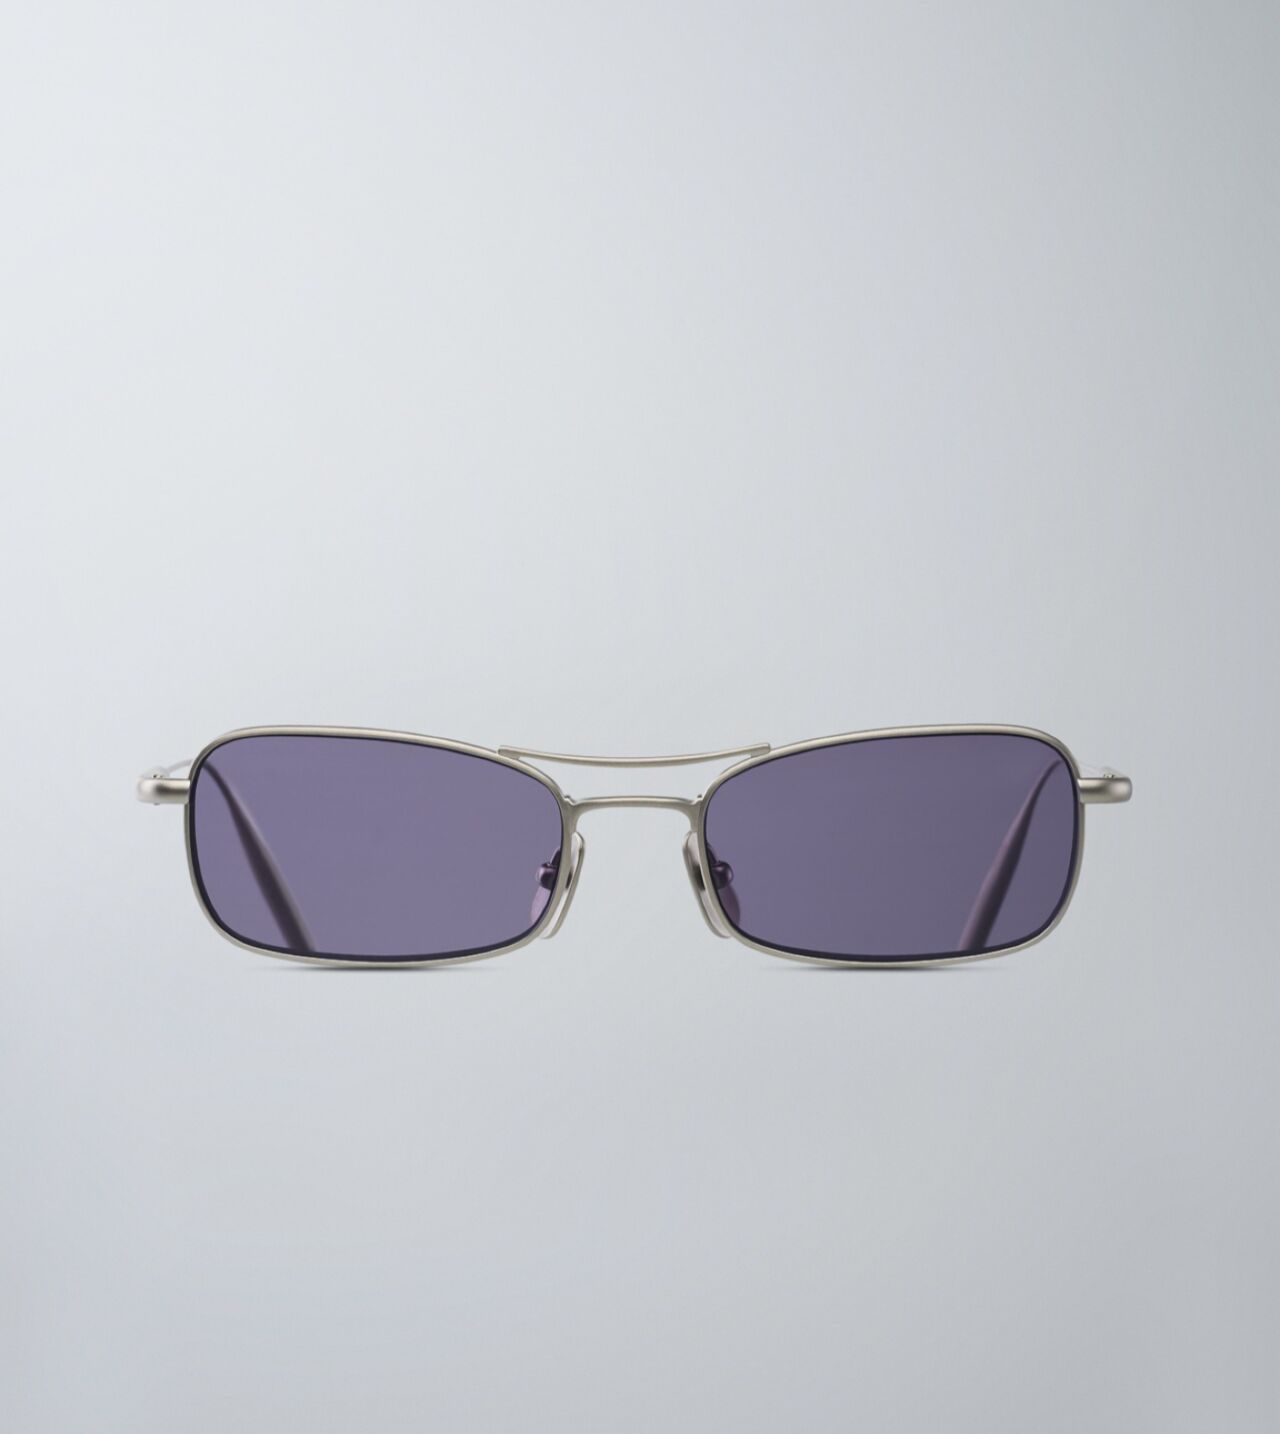 Takenaka Sunglasses in Palladium Mat/Purple